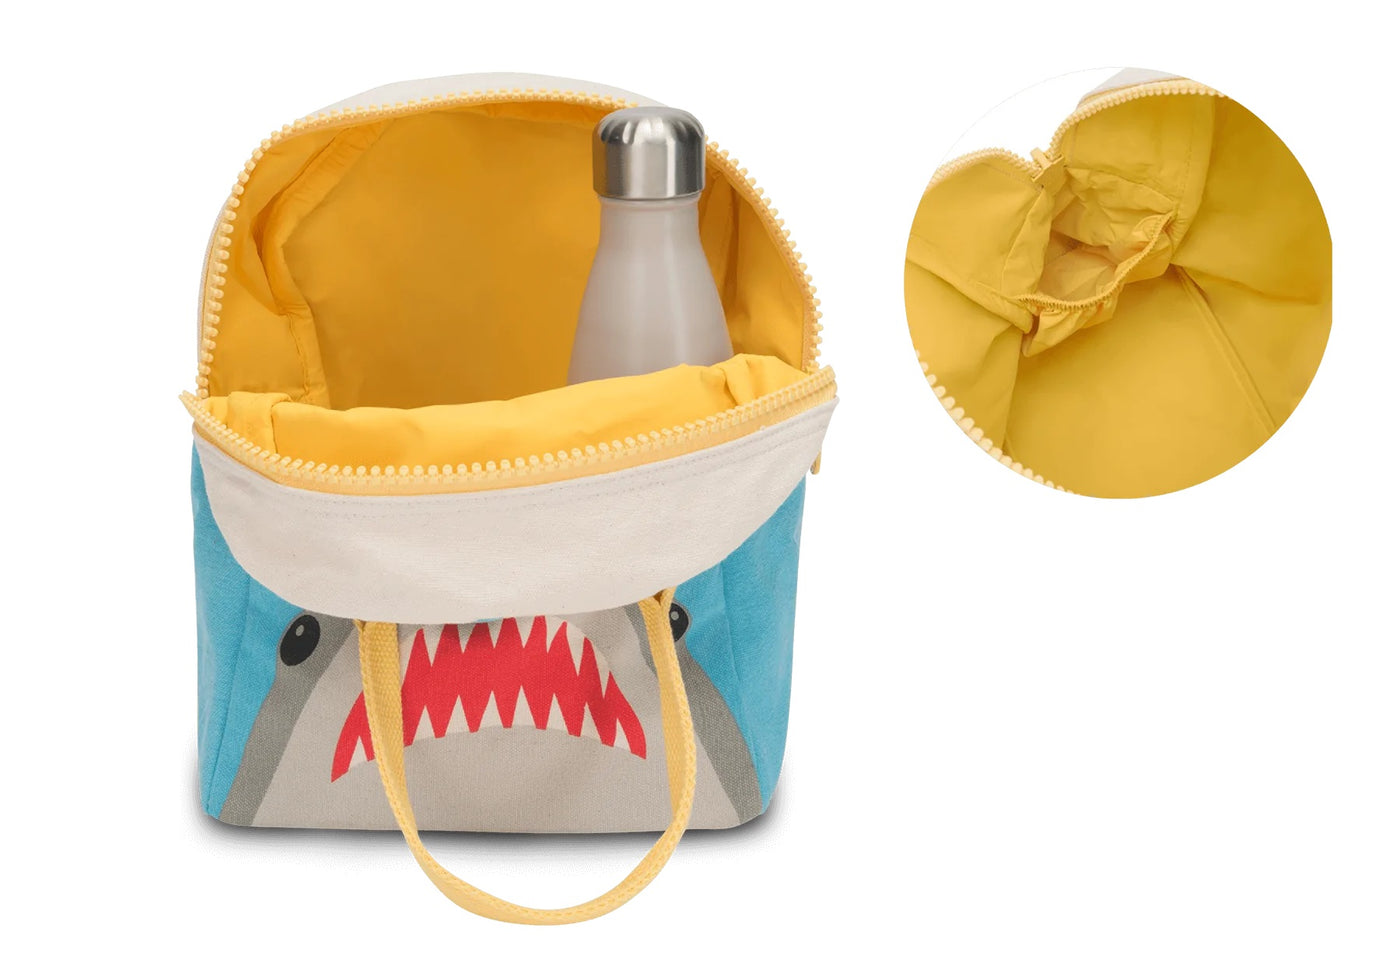 Fluf Lunch Bag With Zipper - Shark